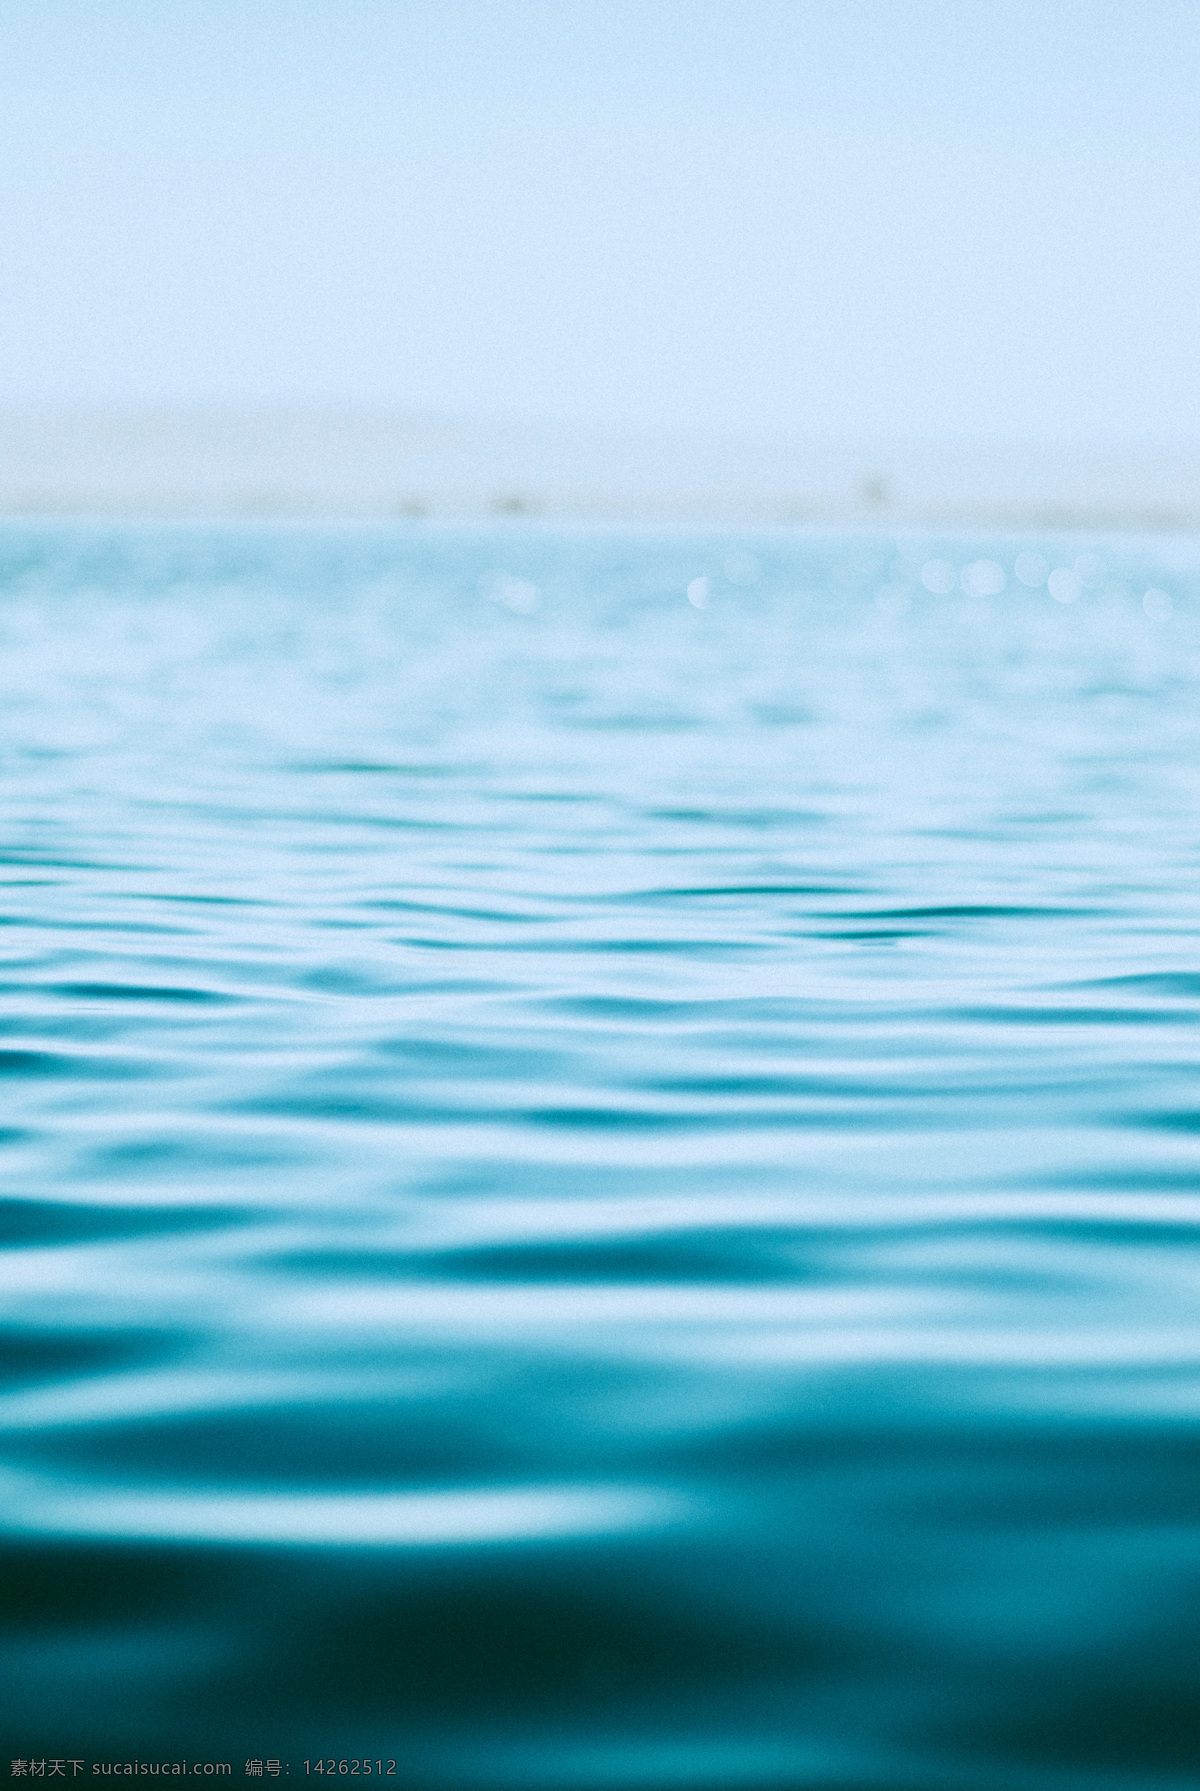 蓝色的水 海水 水 海洋 波浪 液体 蓝色 海景 表面 纹理 底纹 冷静 思考 大海 蓝天 自然景观 山水风景